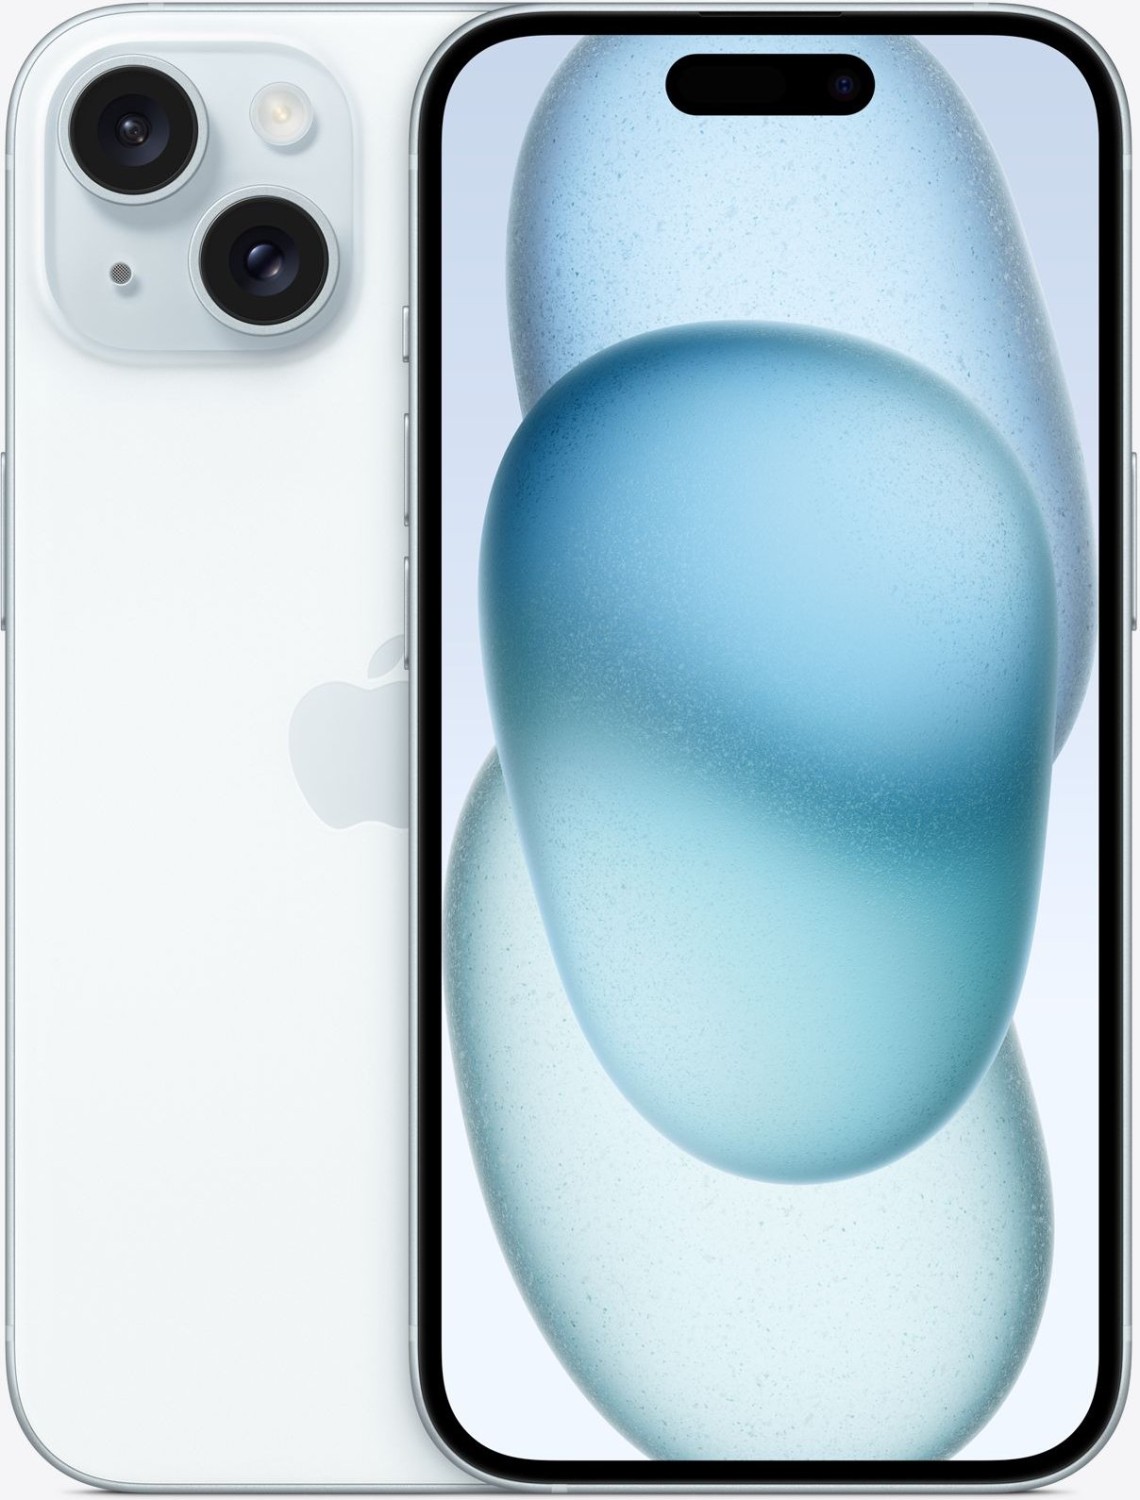 Das Warten auf die neuesten Apple-Geräte hat endlich ein Ende, und die iPhone 15 Serie steht in den Startlöchern. Doch wo bekommt man die begehrten Modelle am günstigsten? In diesem Artikel vergleichen wir die Angebote von A1, Magenta und Drei, um Ihnen bei Ihrer Entscheidung zu helfen.